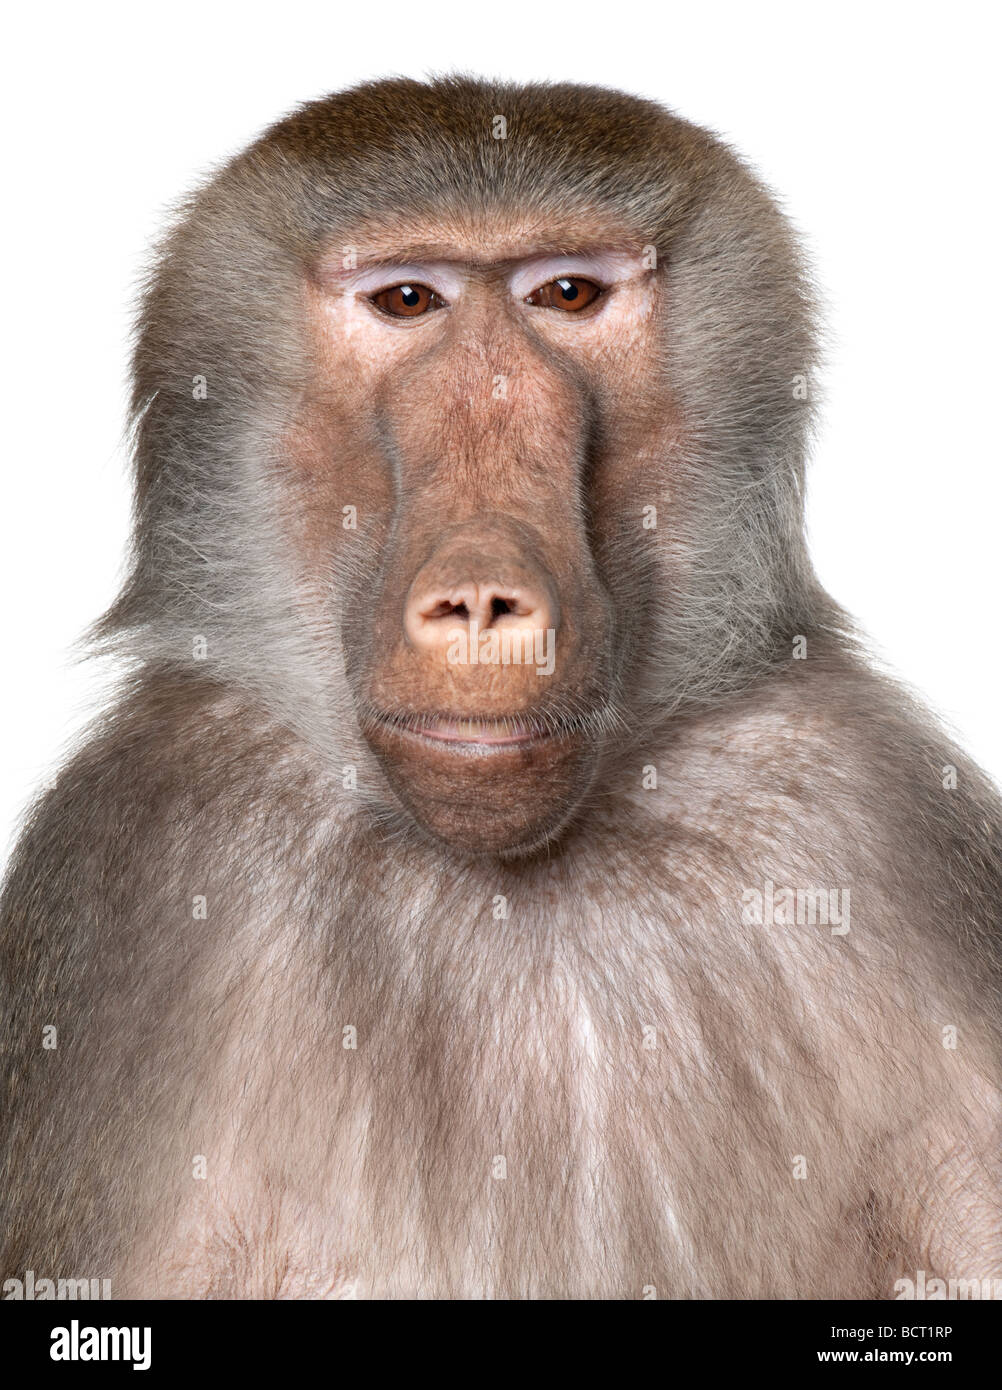 Gros plan sur une tête de babouin, Simia hamadryas, devant un fond blanc, studio shot Banque D'Images